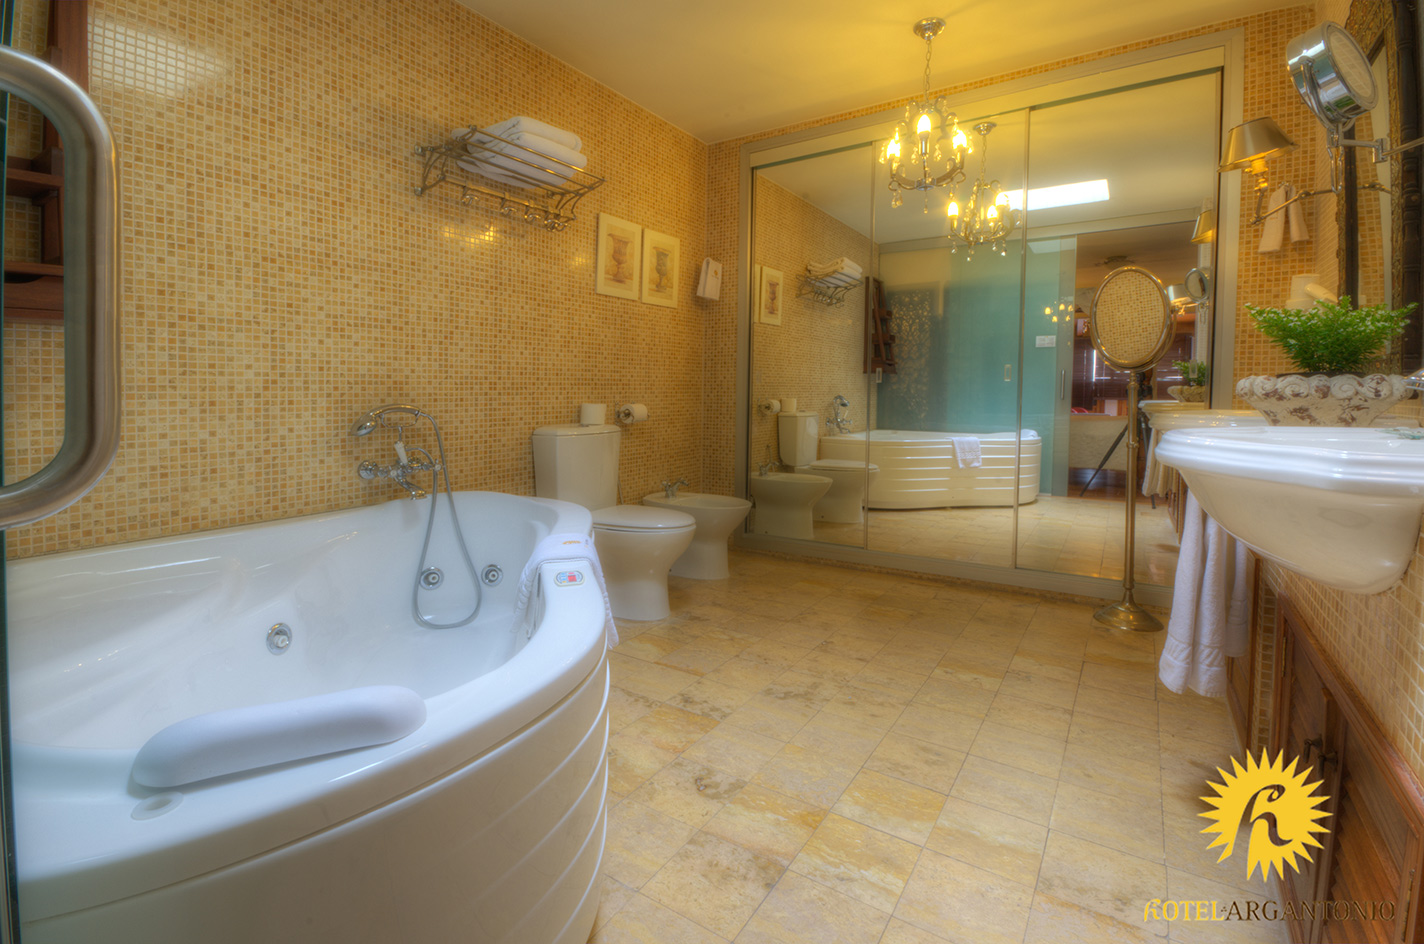 Semiramis Suite Room 04 - Hotel Argantonio in Cadiz